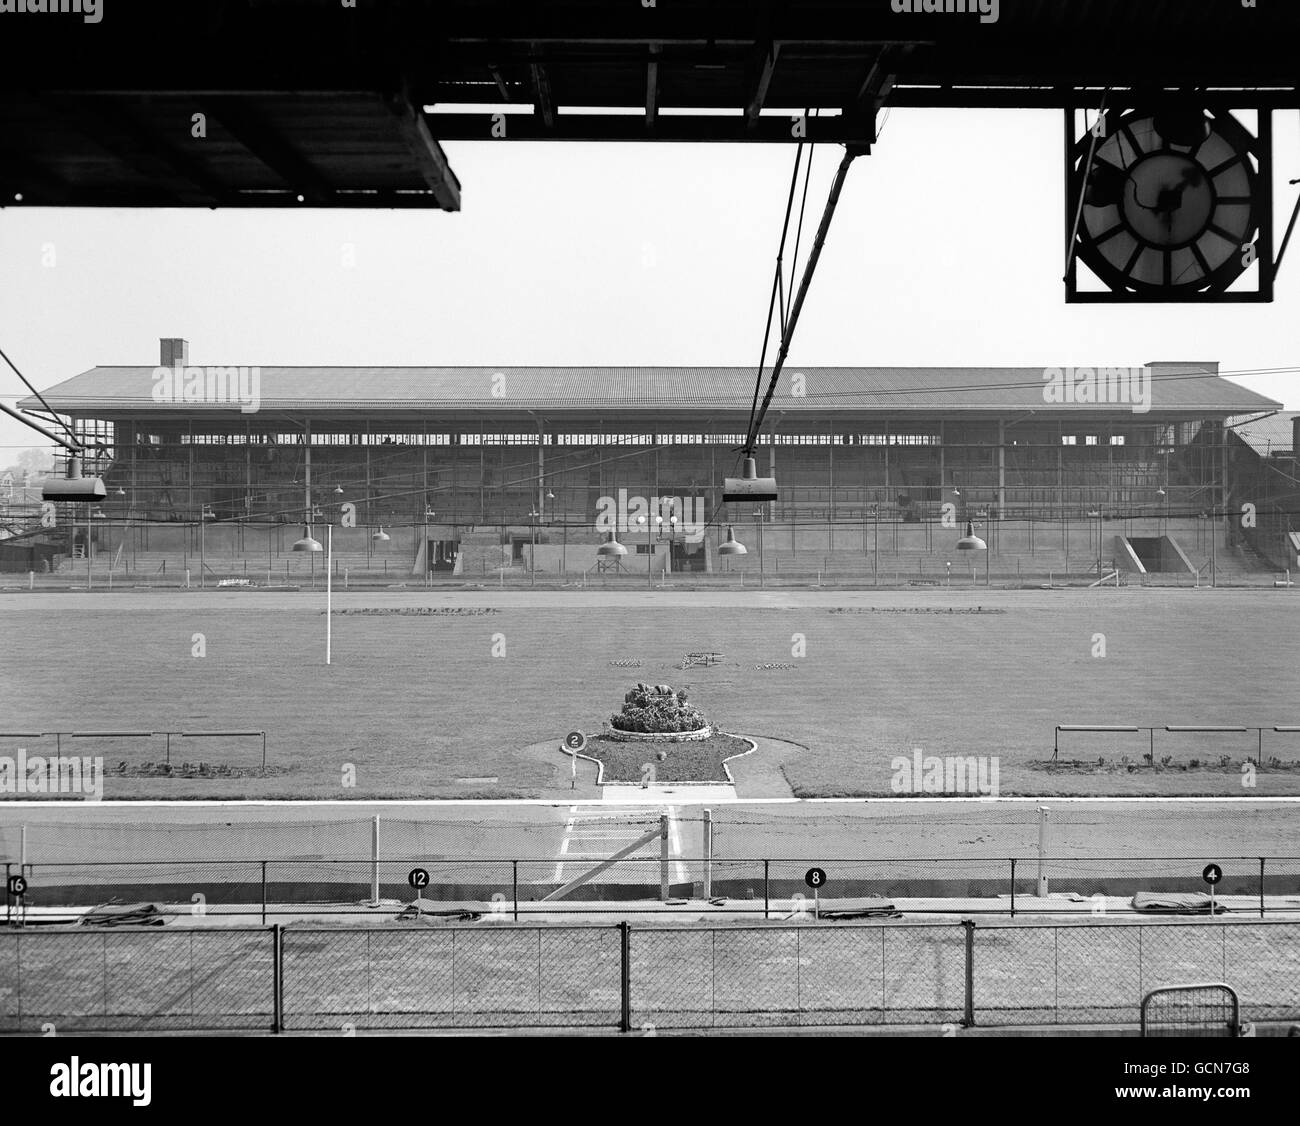 Dog Racing - Wimbledon Greyhound Stadium - London. General view at Wimbledon Greyhound Stadium, London. Stock Photo